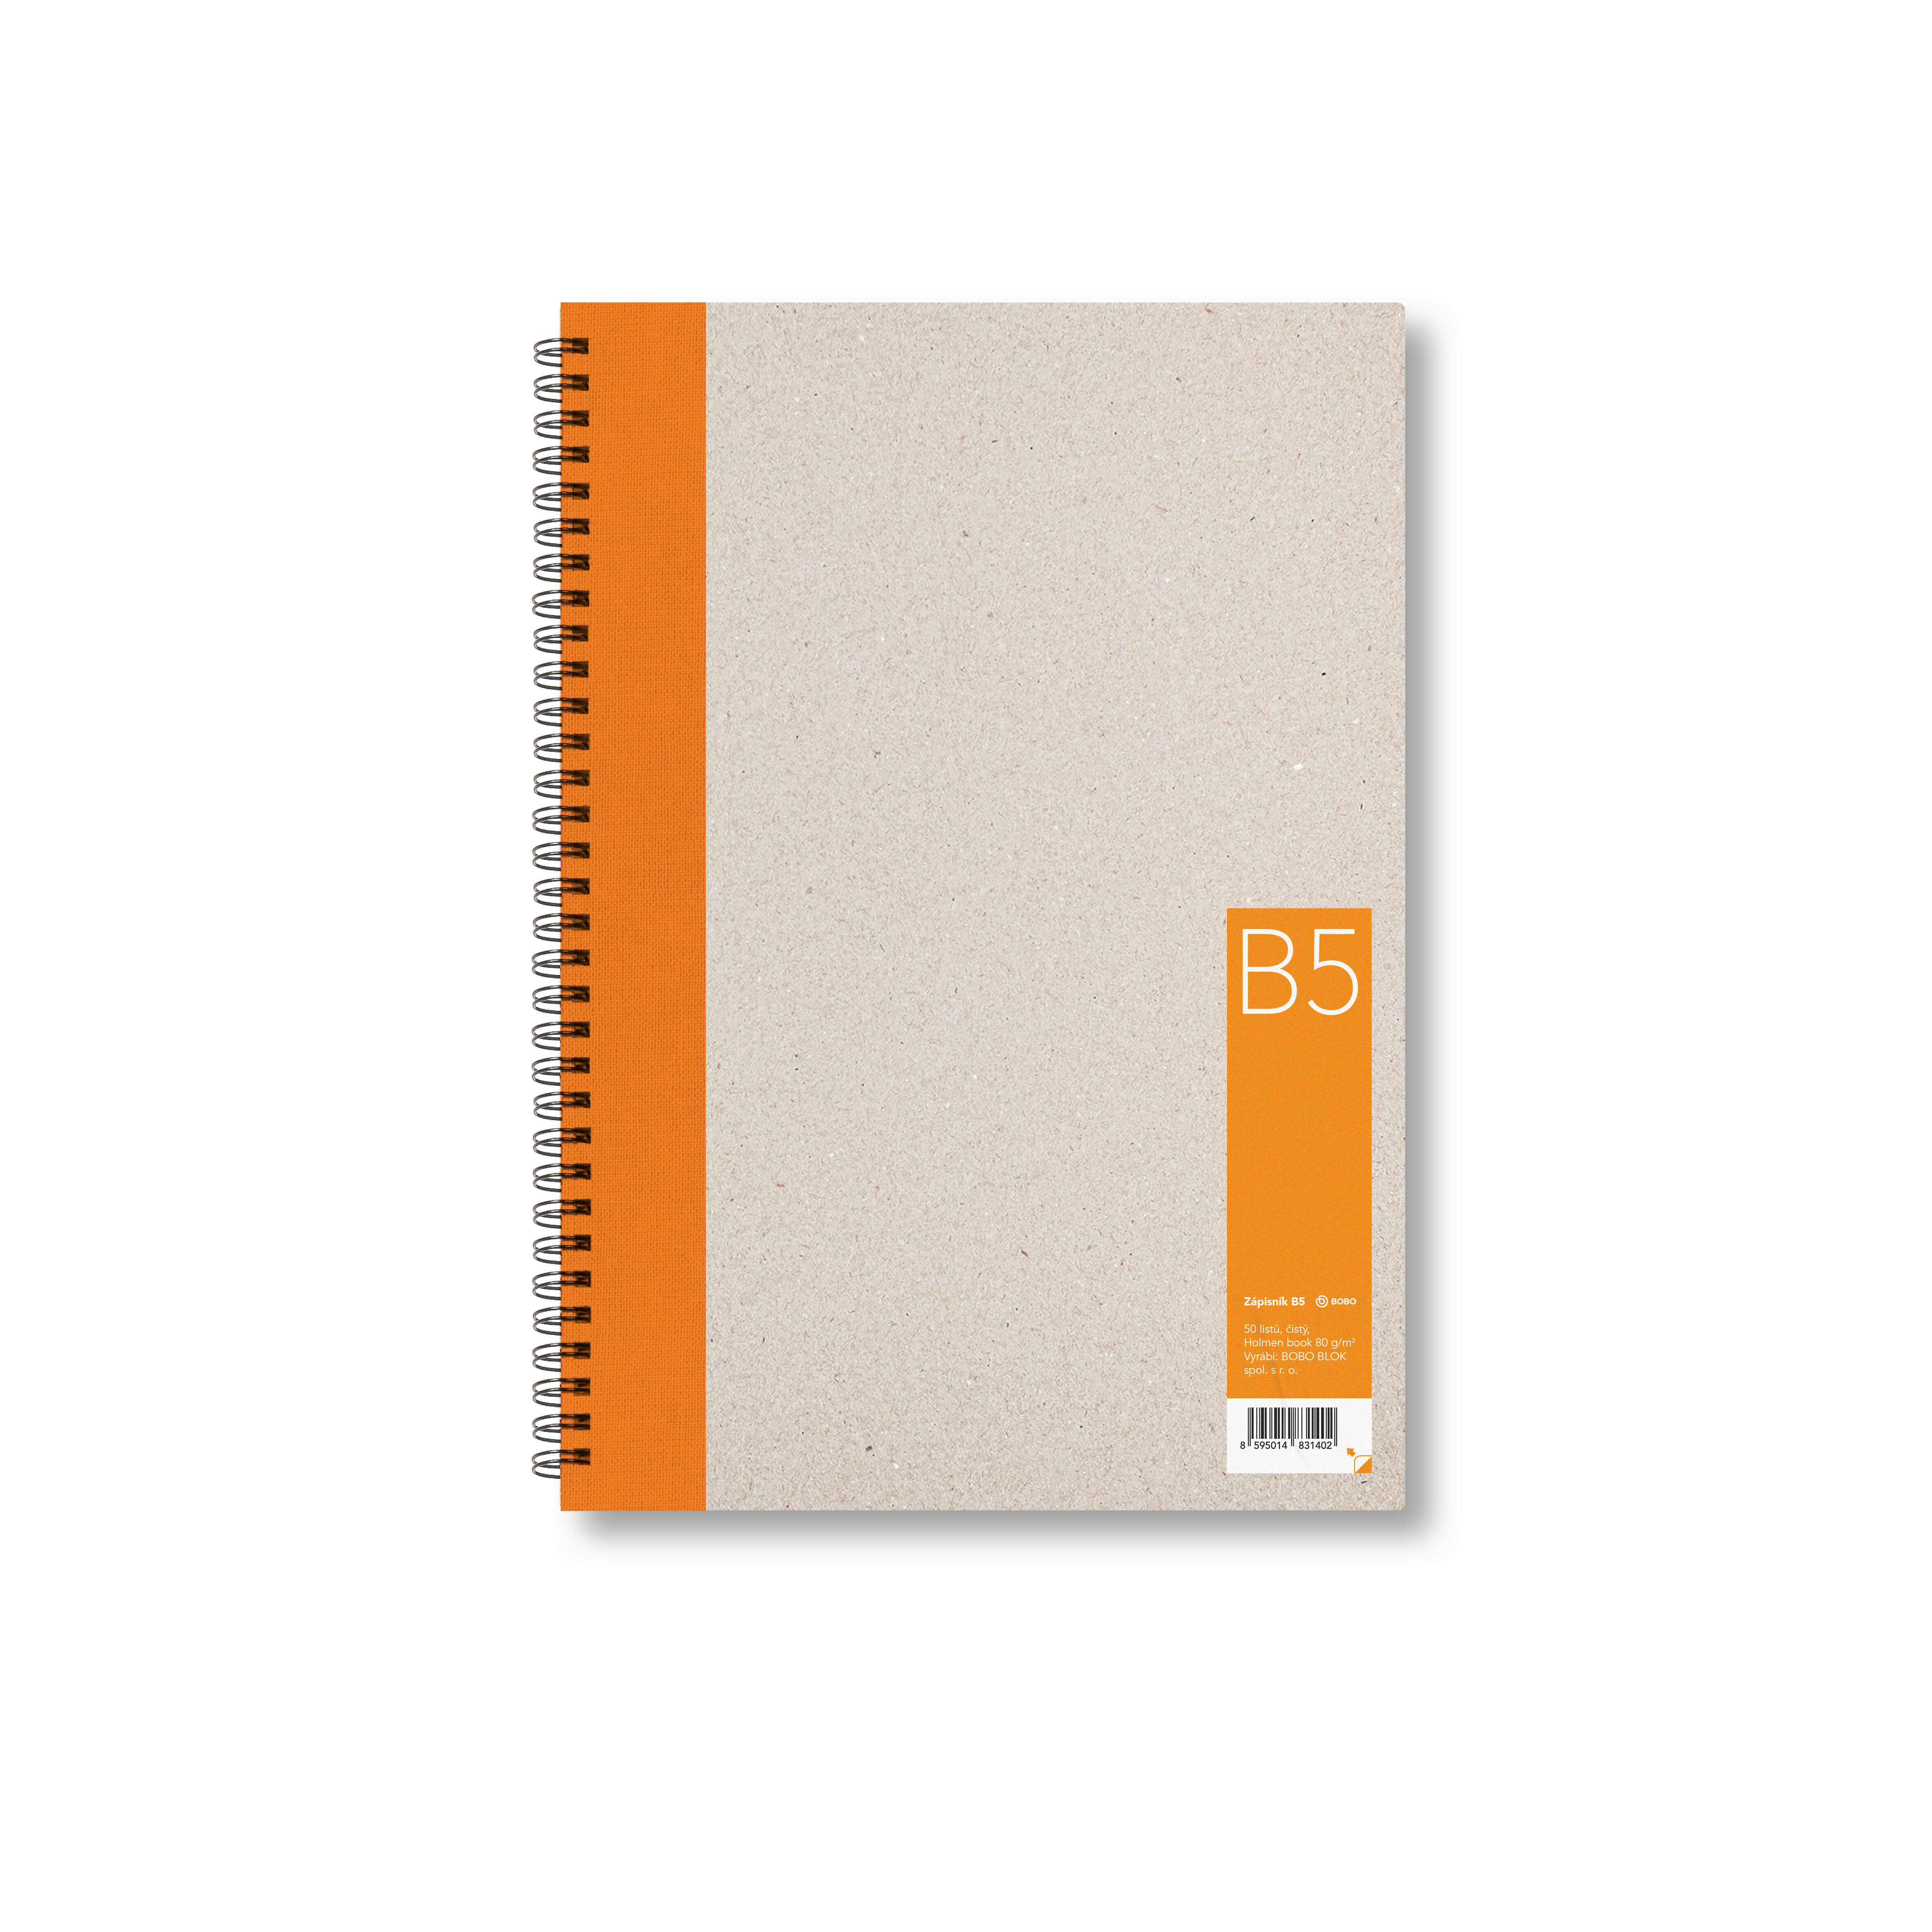 Zápisník Bobo B5, čistý, oranžový